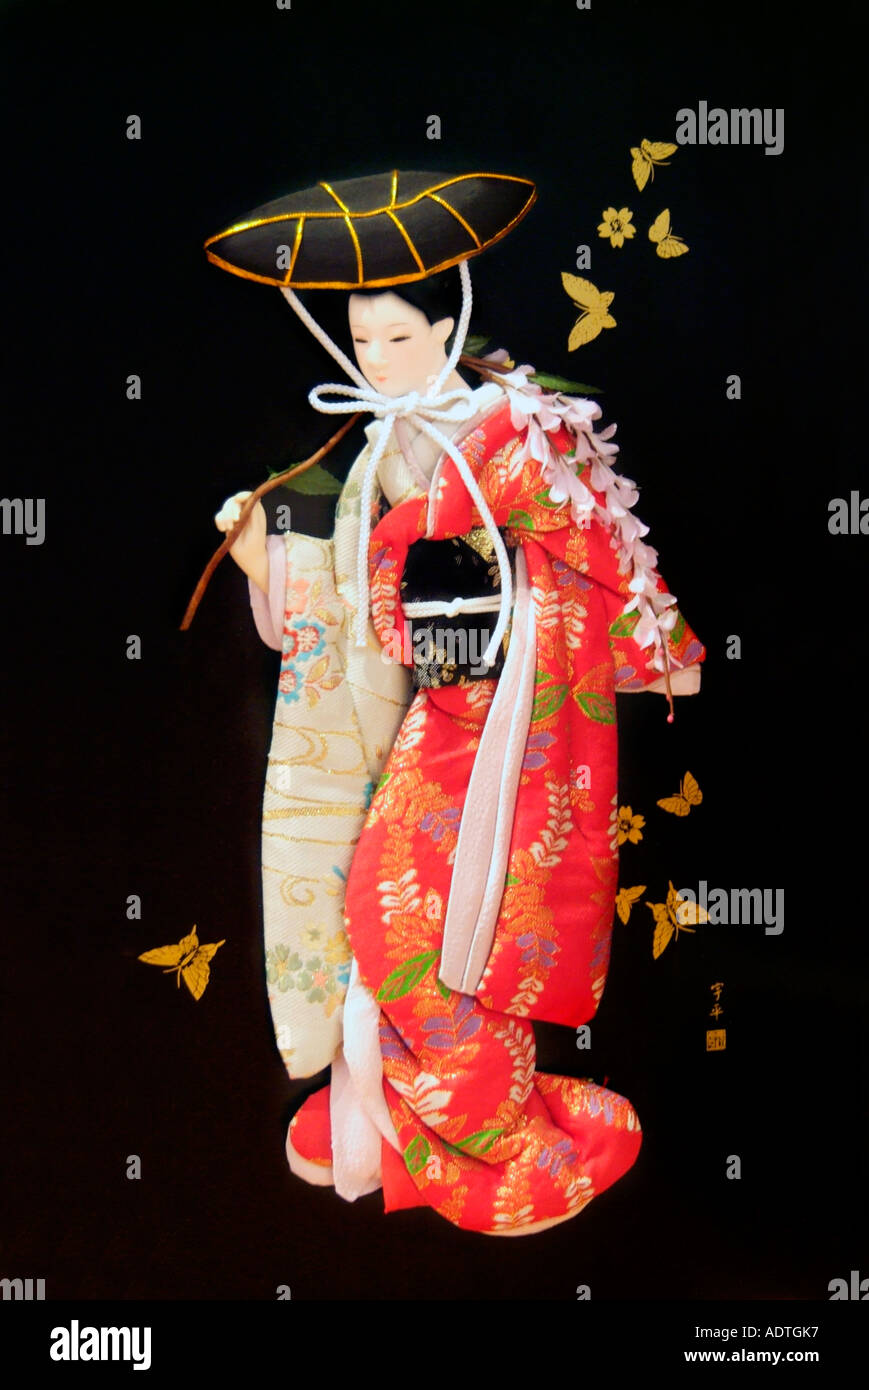 Poupée Toujours Japonaise Mignonne De Geisha De La Vie Photo stock - Image  du ethnicité, asiatique: 37763668